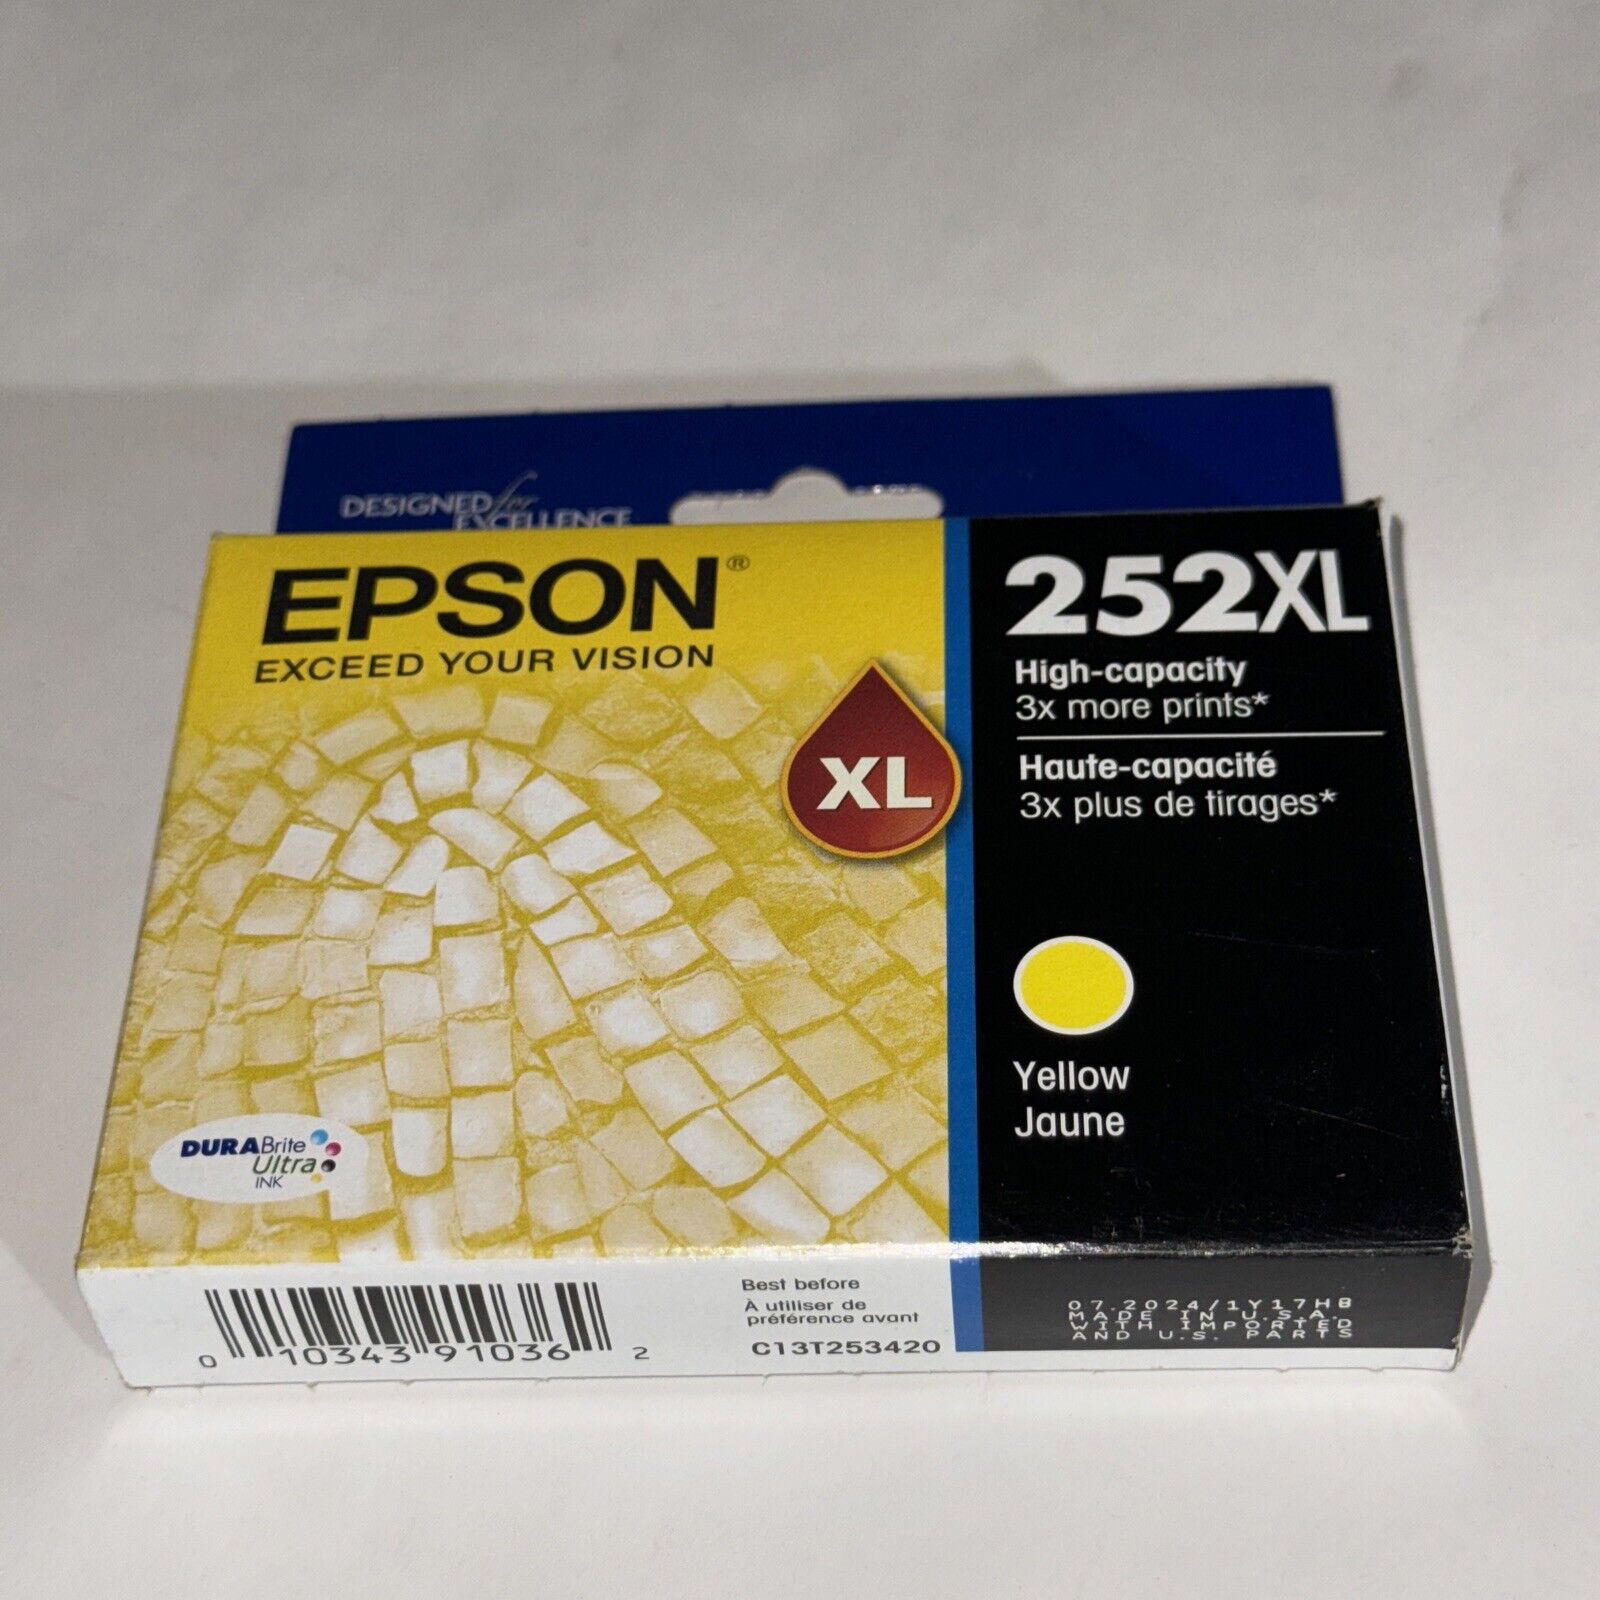 Genuine Epson 252XL High-Capacity Yellow Ink Cartridge Expires 07/2024 - NEW